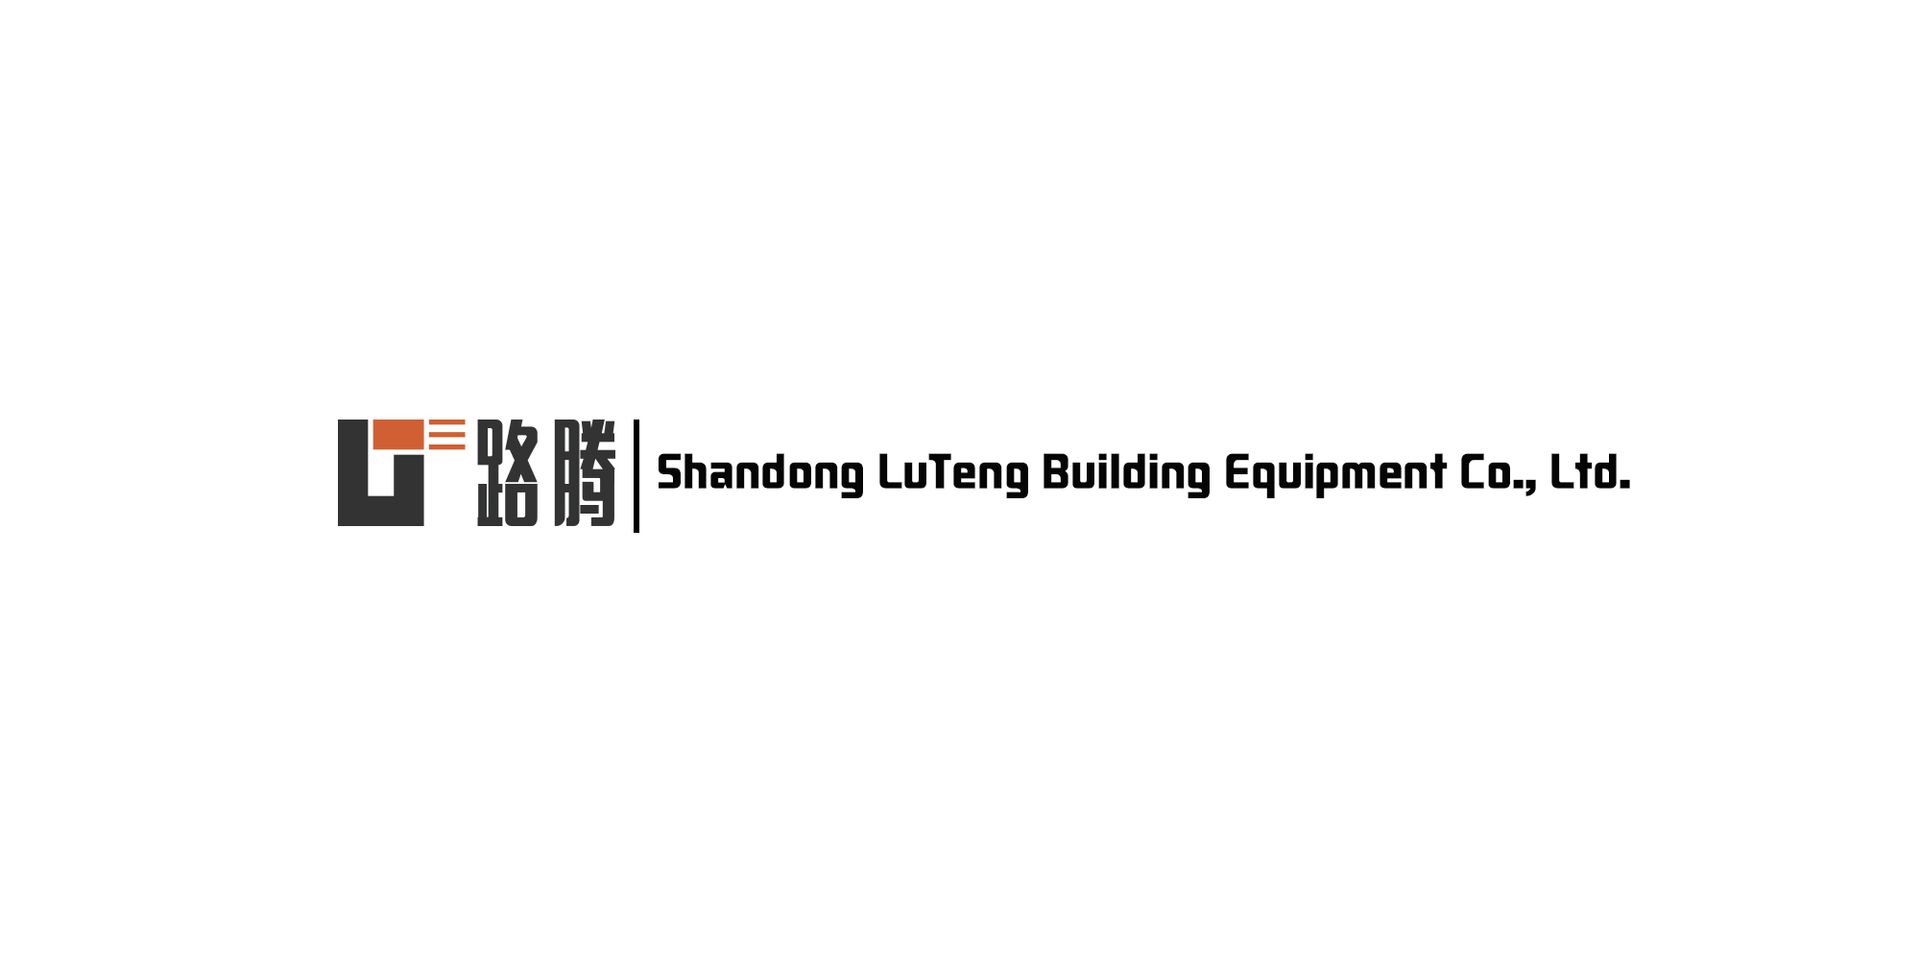 Shandong Luteng Building Equipment Co., Ltd. logo